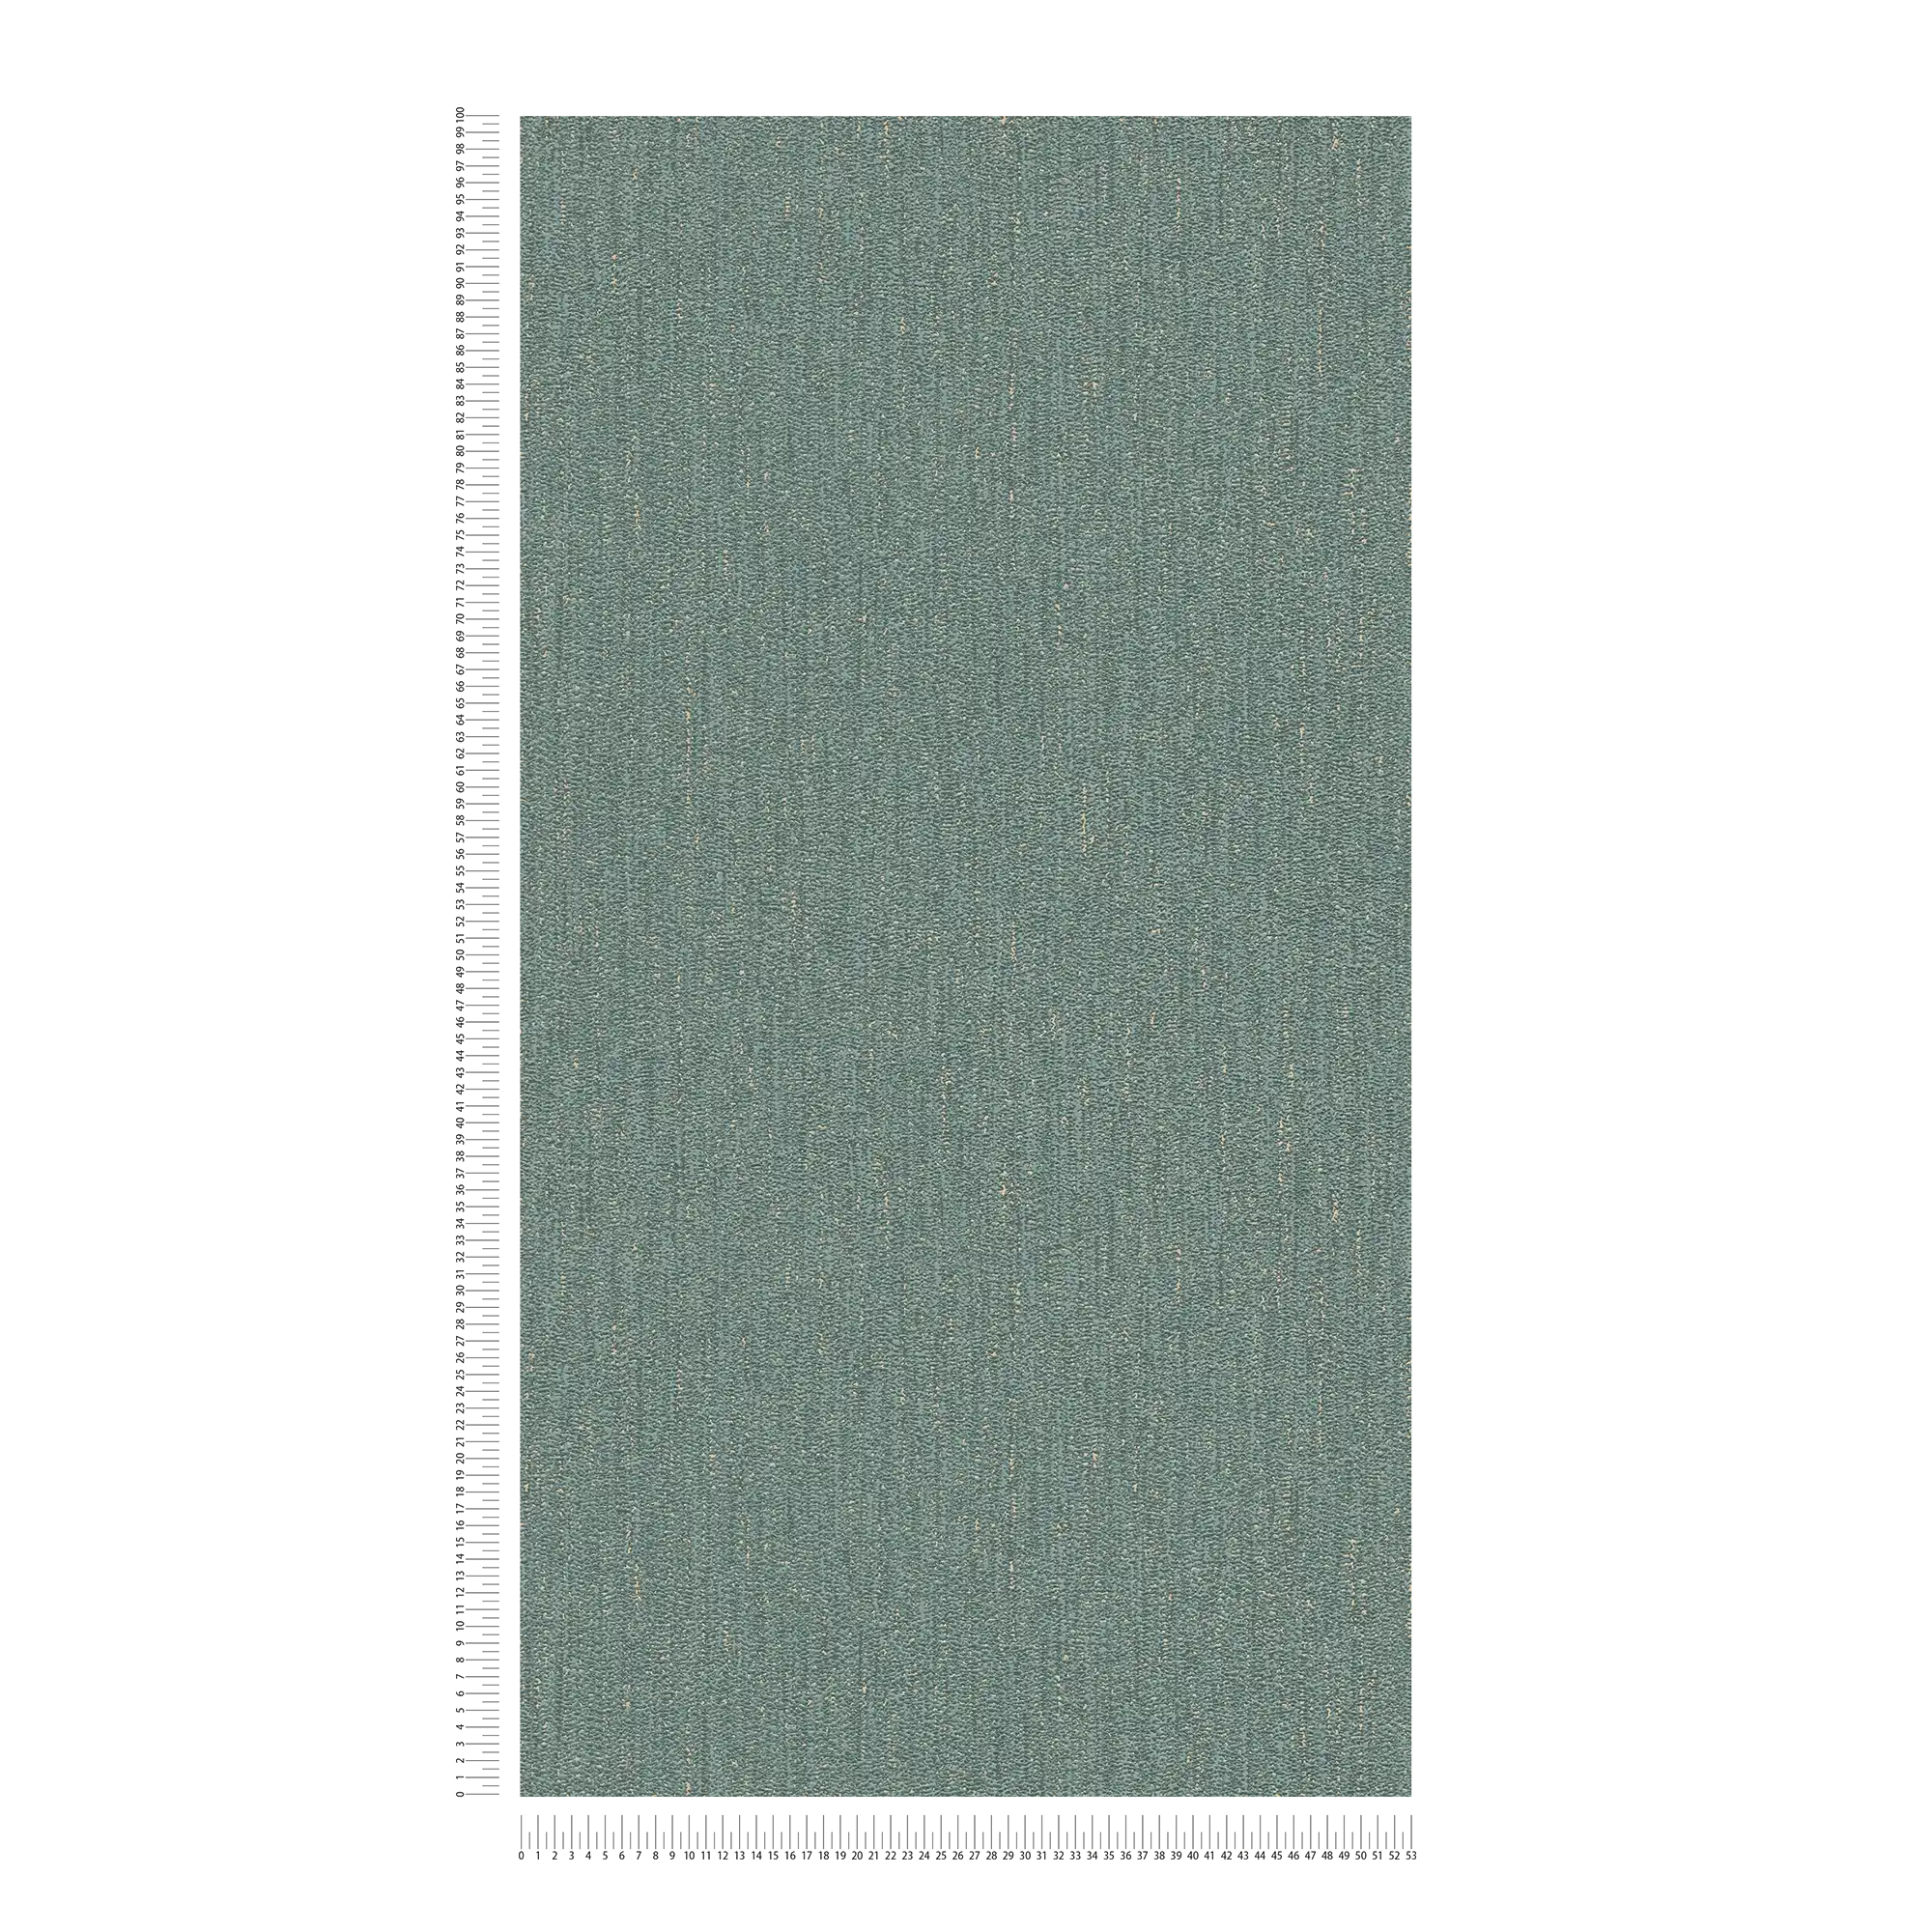             Papier peint structuré aspect tissé légèrement brillant - vert, or
        